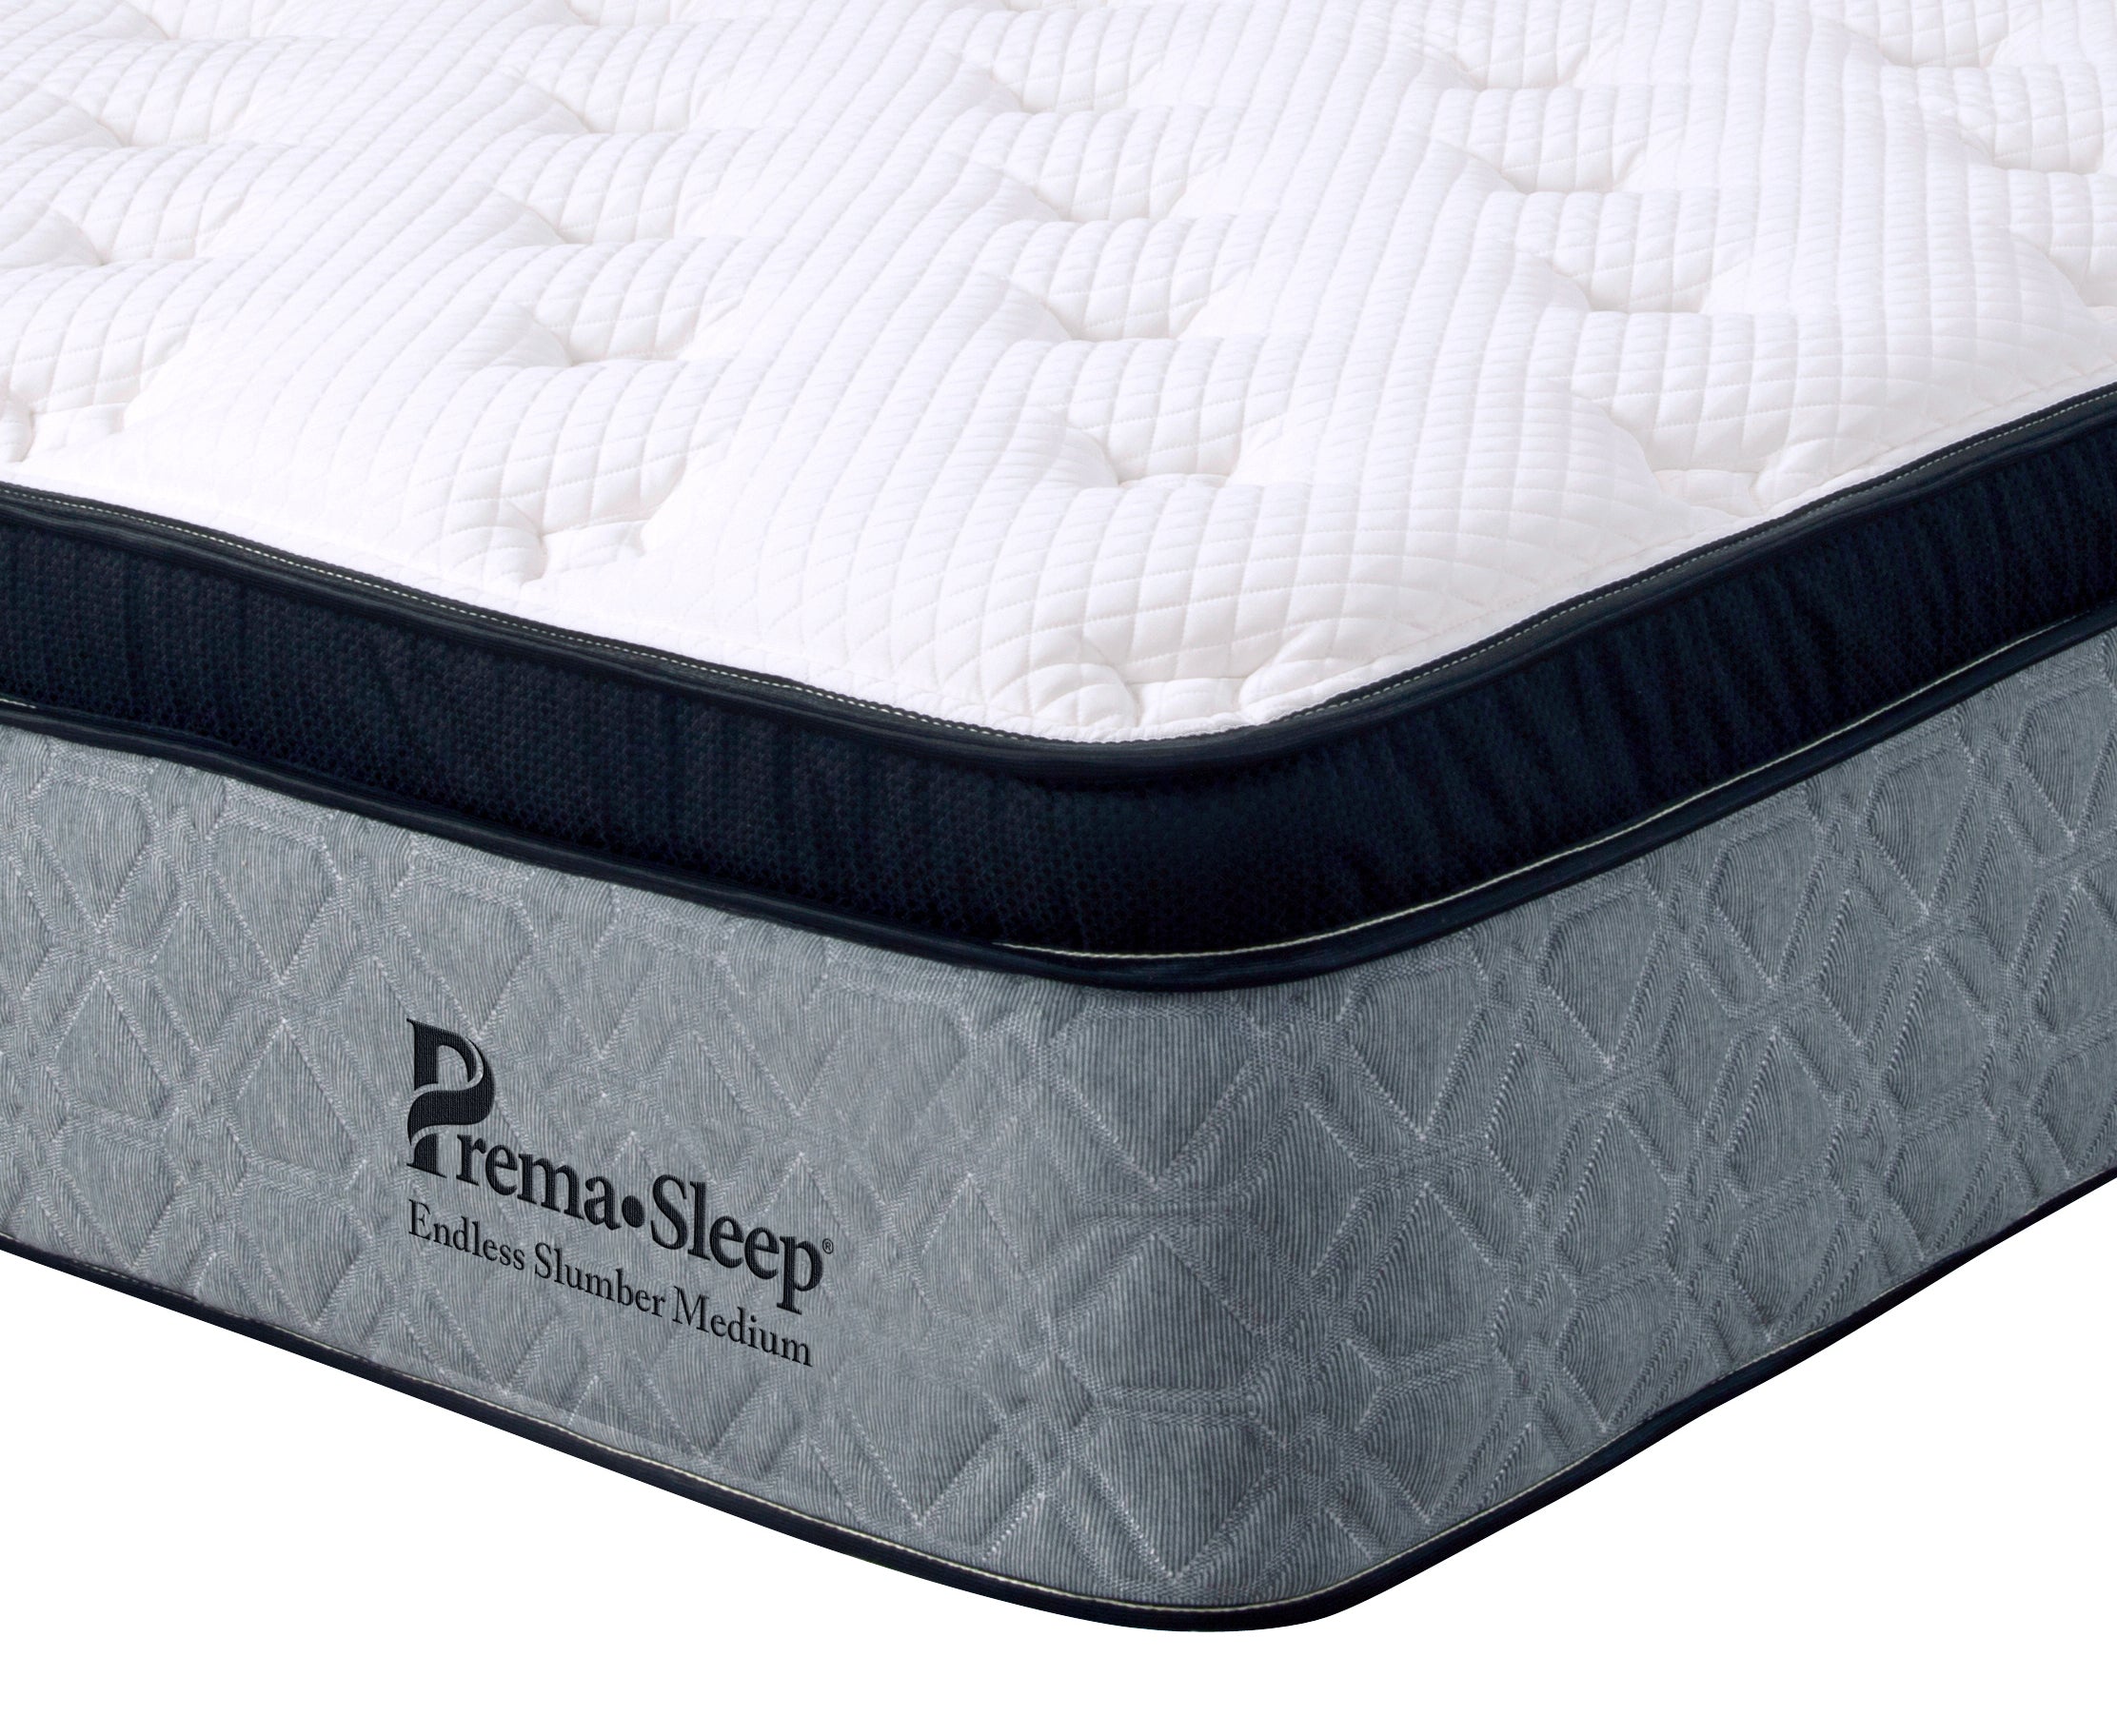 Corner view of PremaSleep Endless Slumber Firm mattress